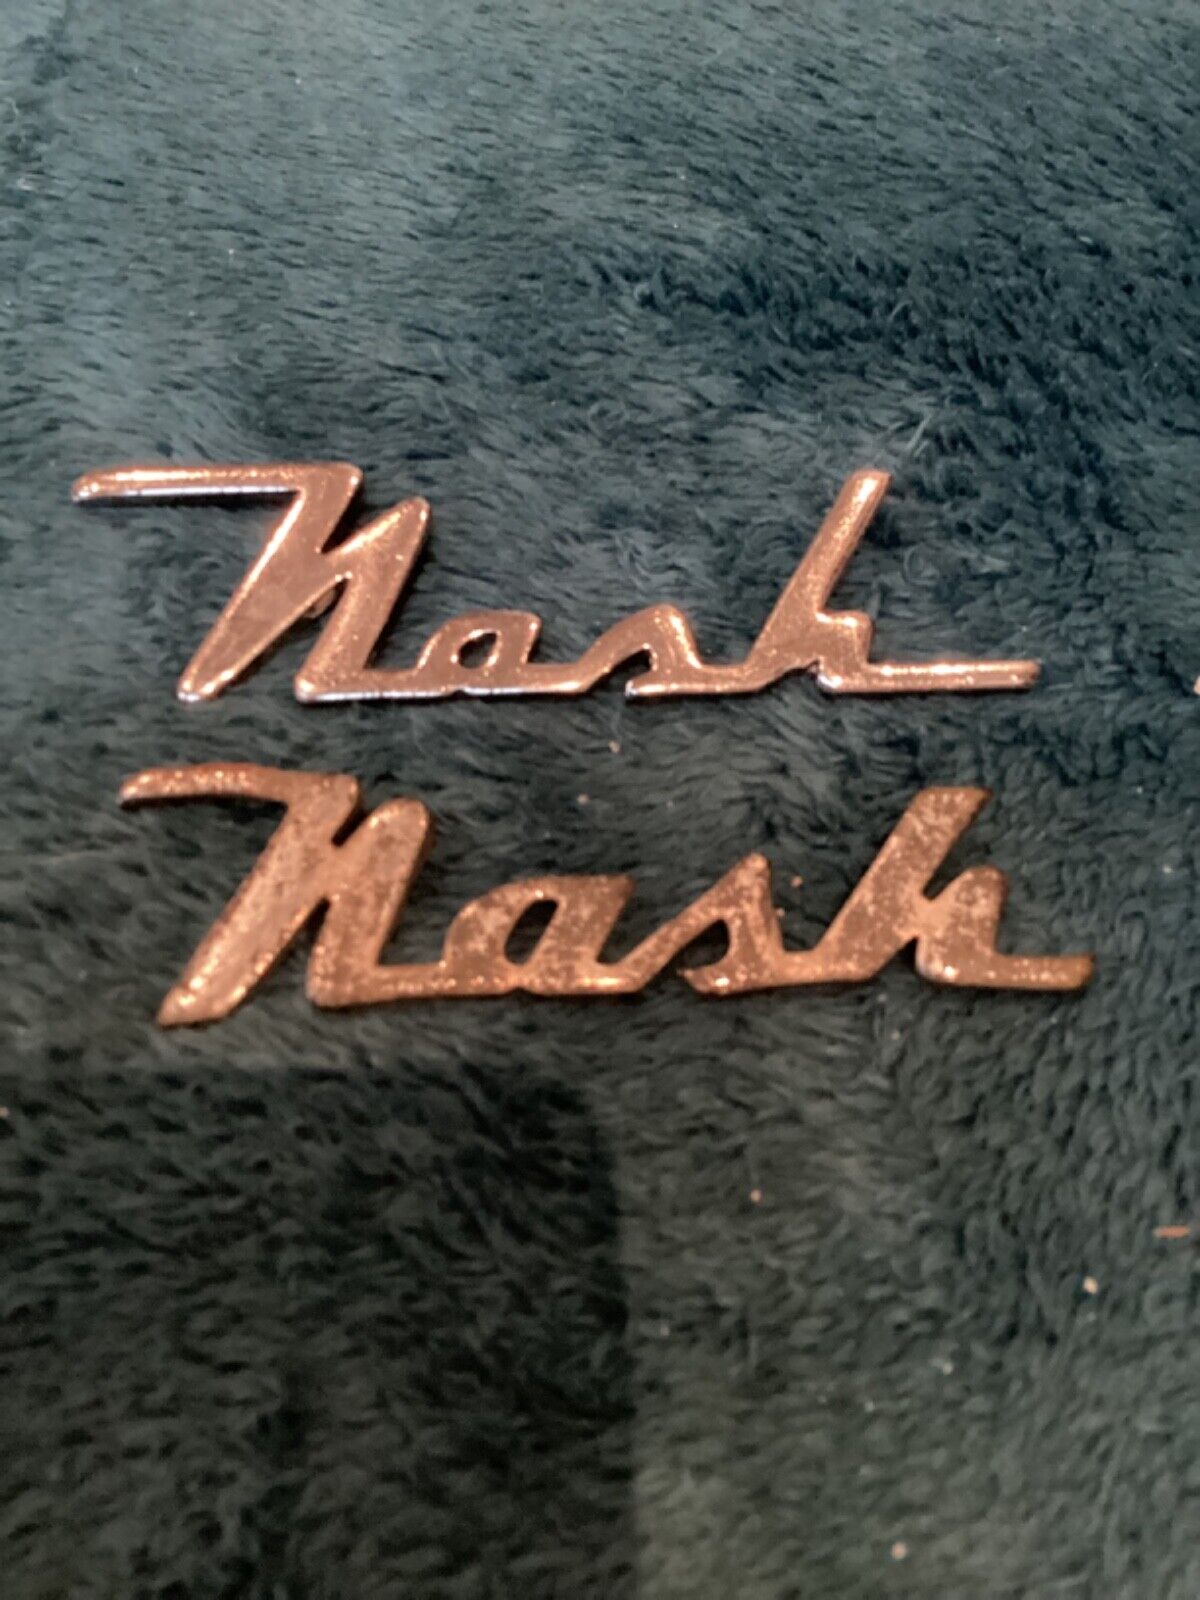 Two Vintage Nash Emblems